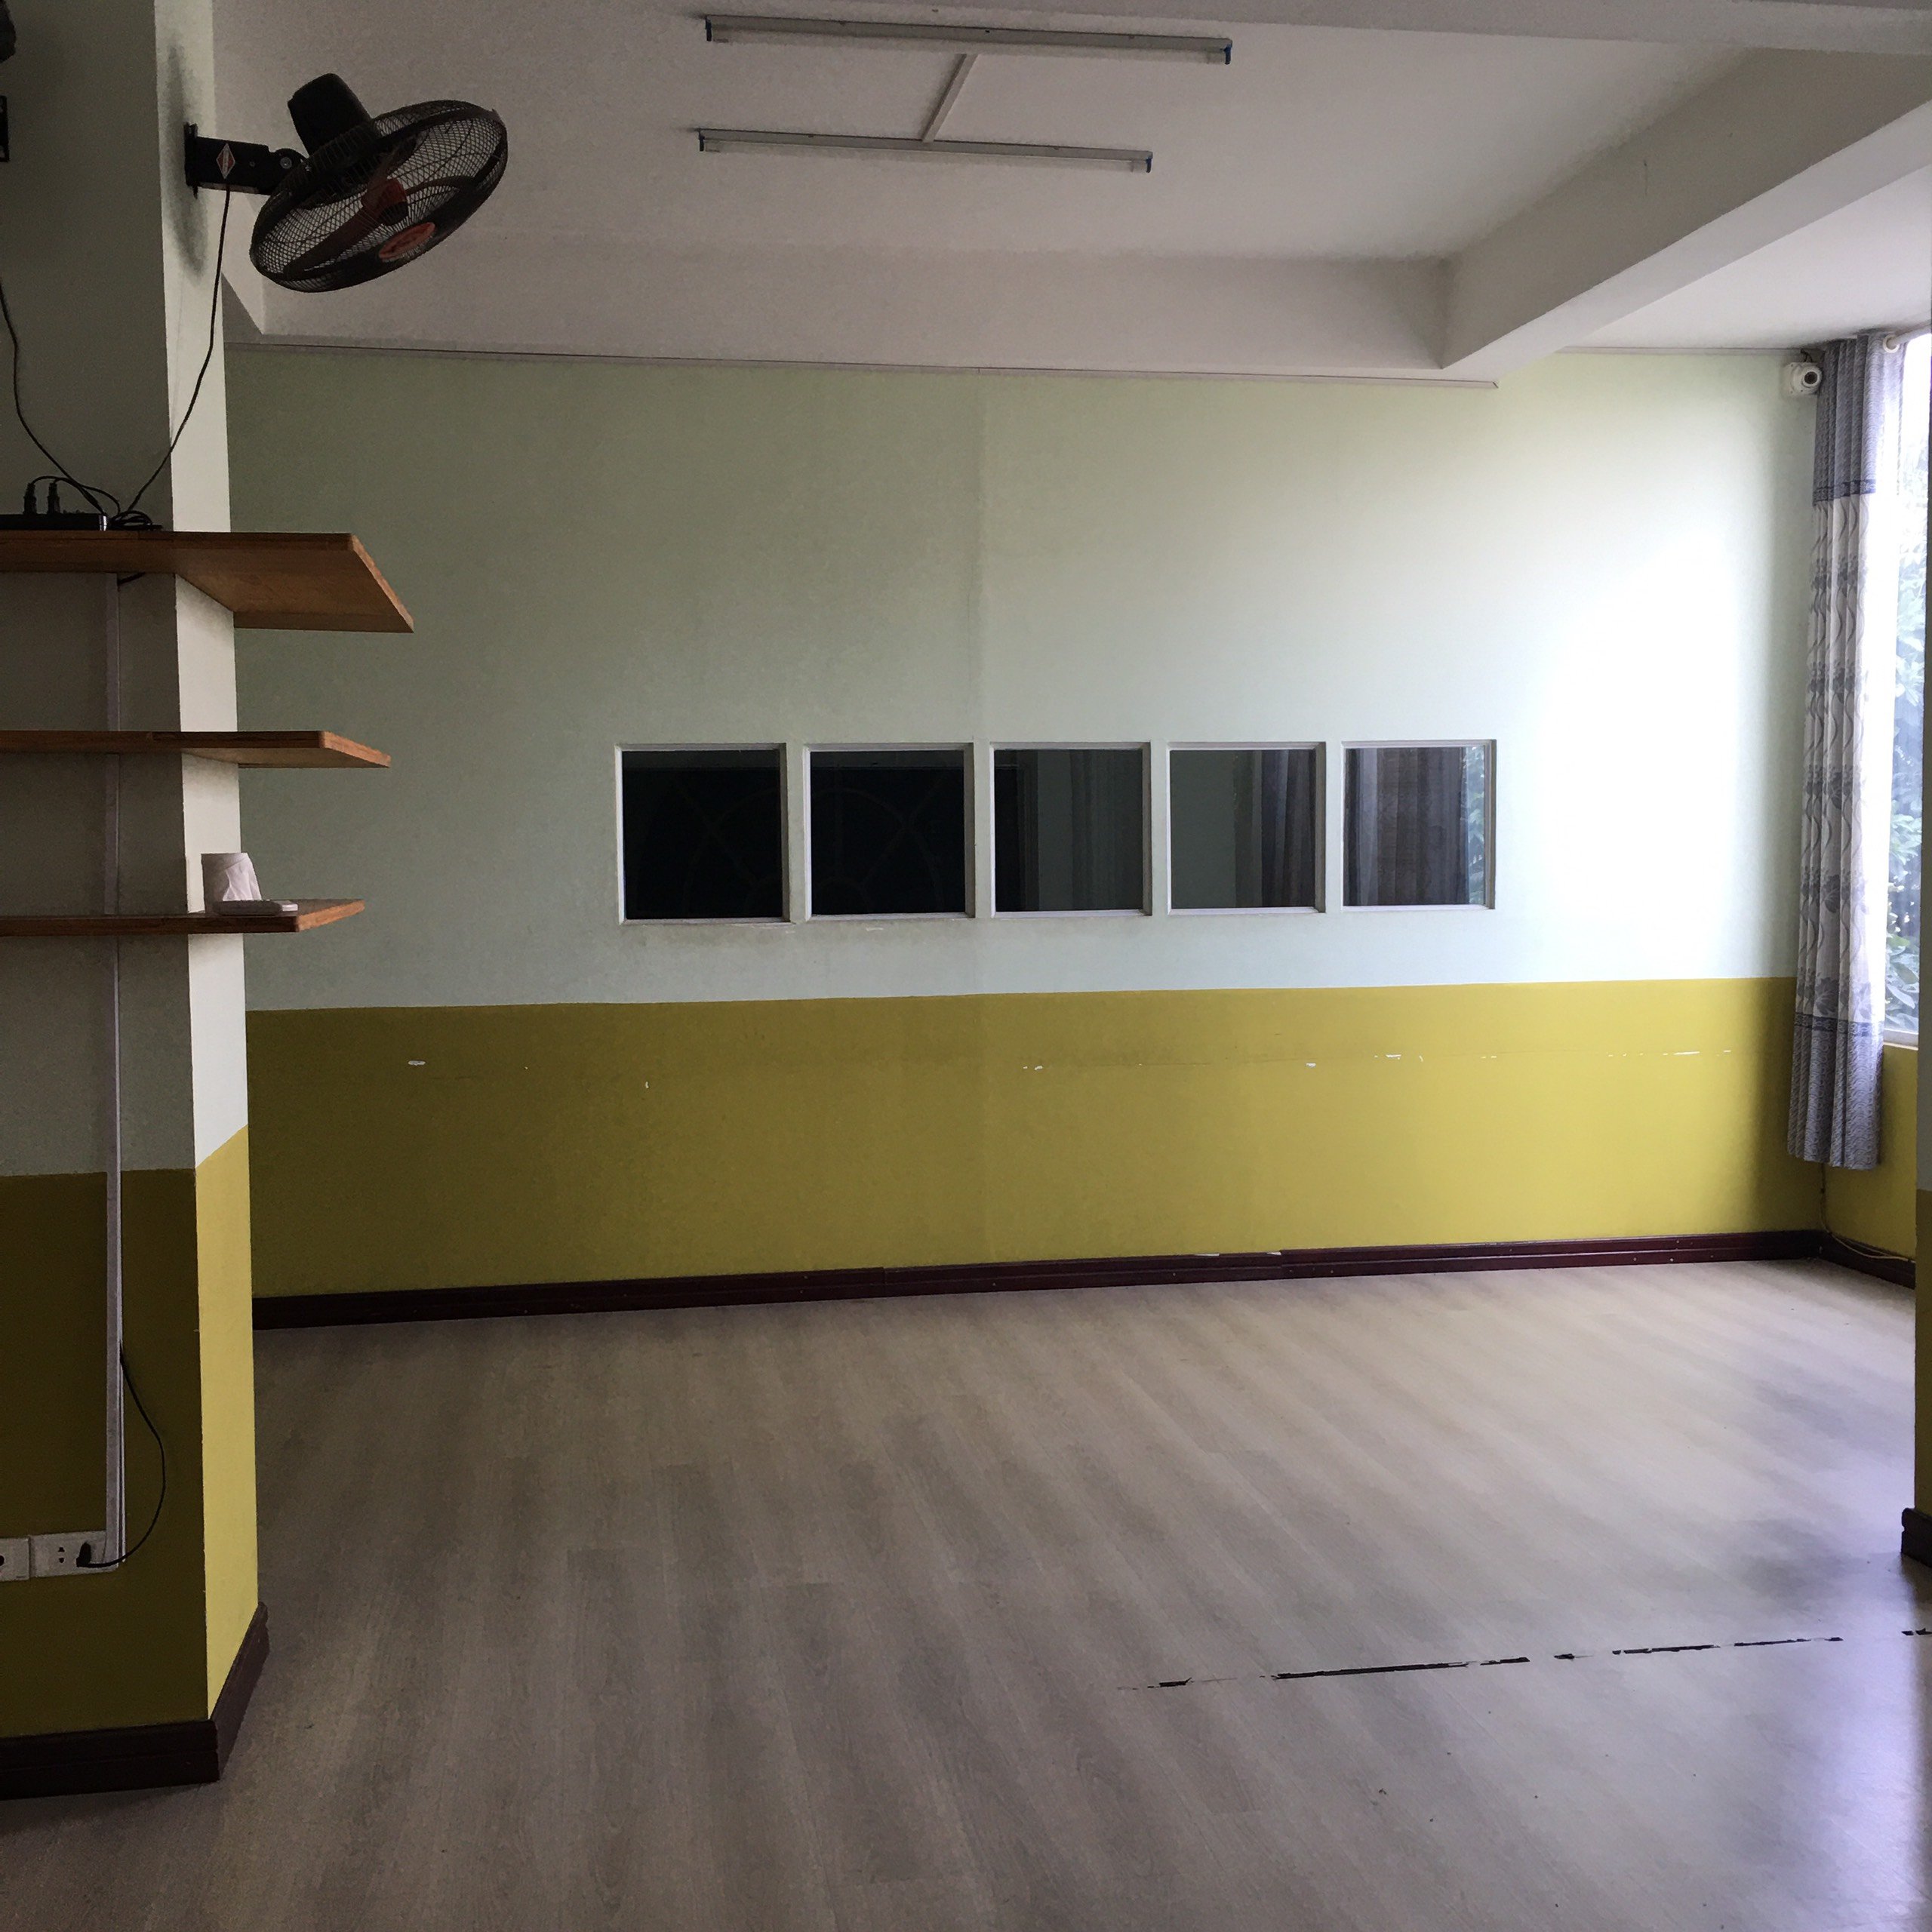 Cho thuê văn phòng đường Nguyễn Văn Lộc, có chỗ để ô tô, bãi gửi xe máy, điều hòa, 1 phòng + thông sàn 4